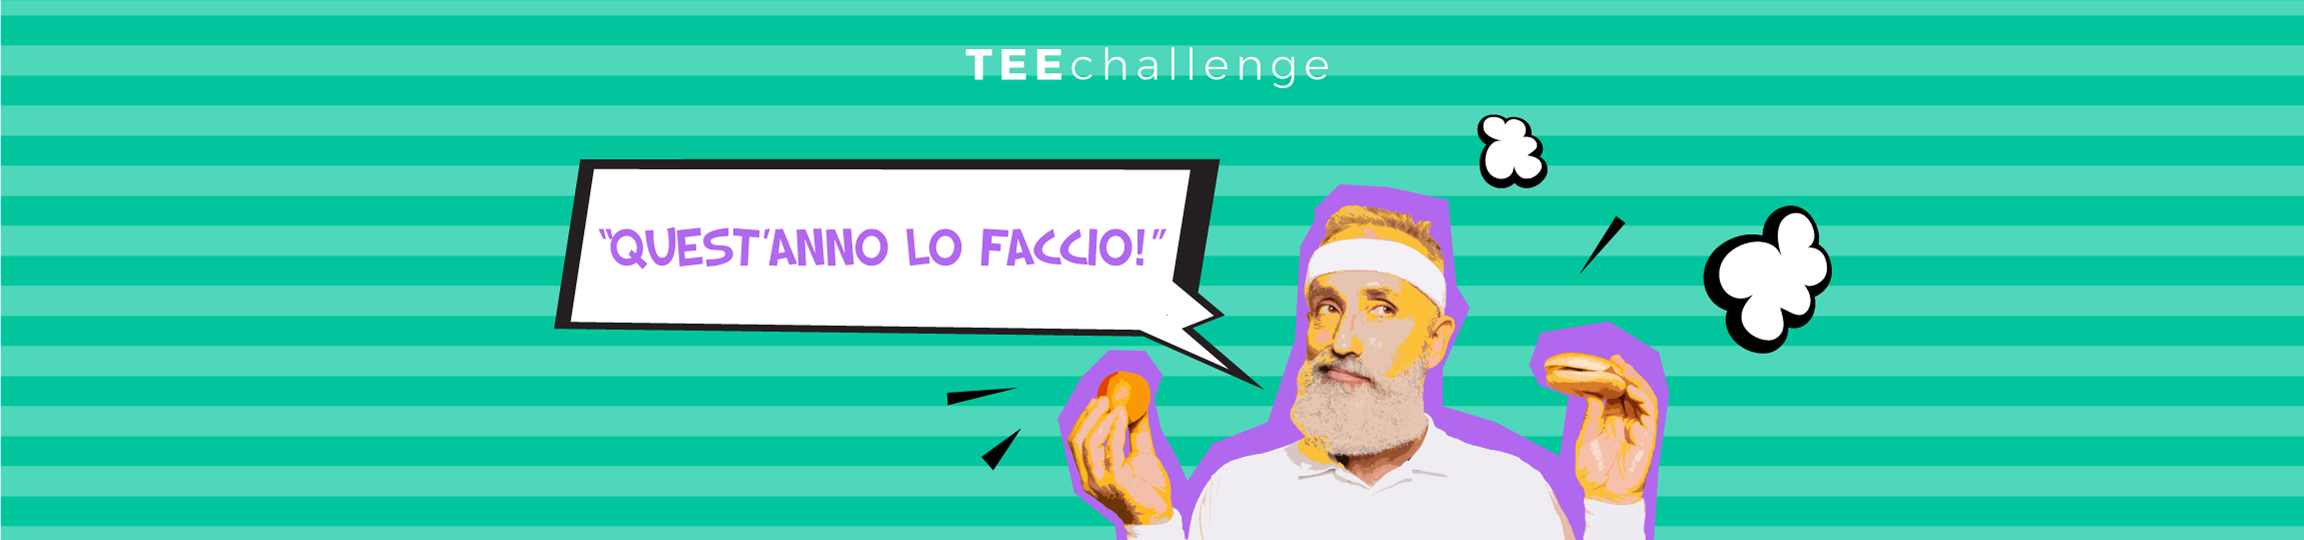 Teechallenge QUEST'ANNO LO FACCIO Banner Desktop